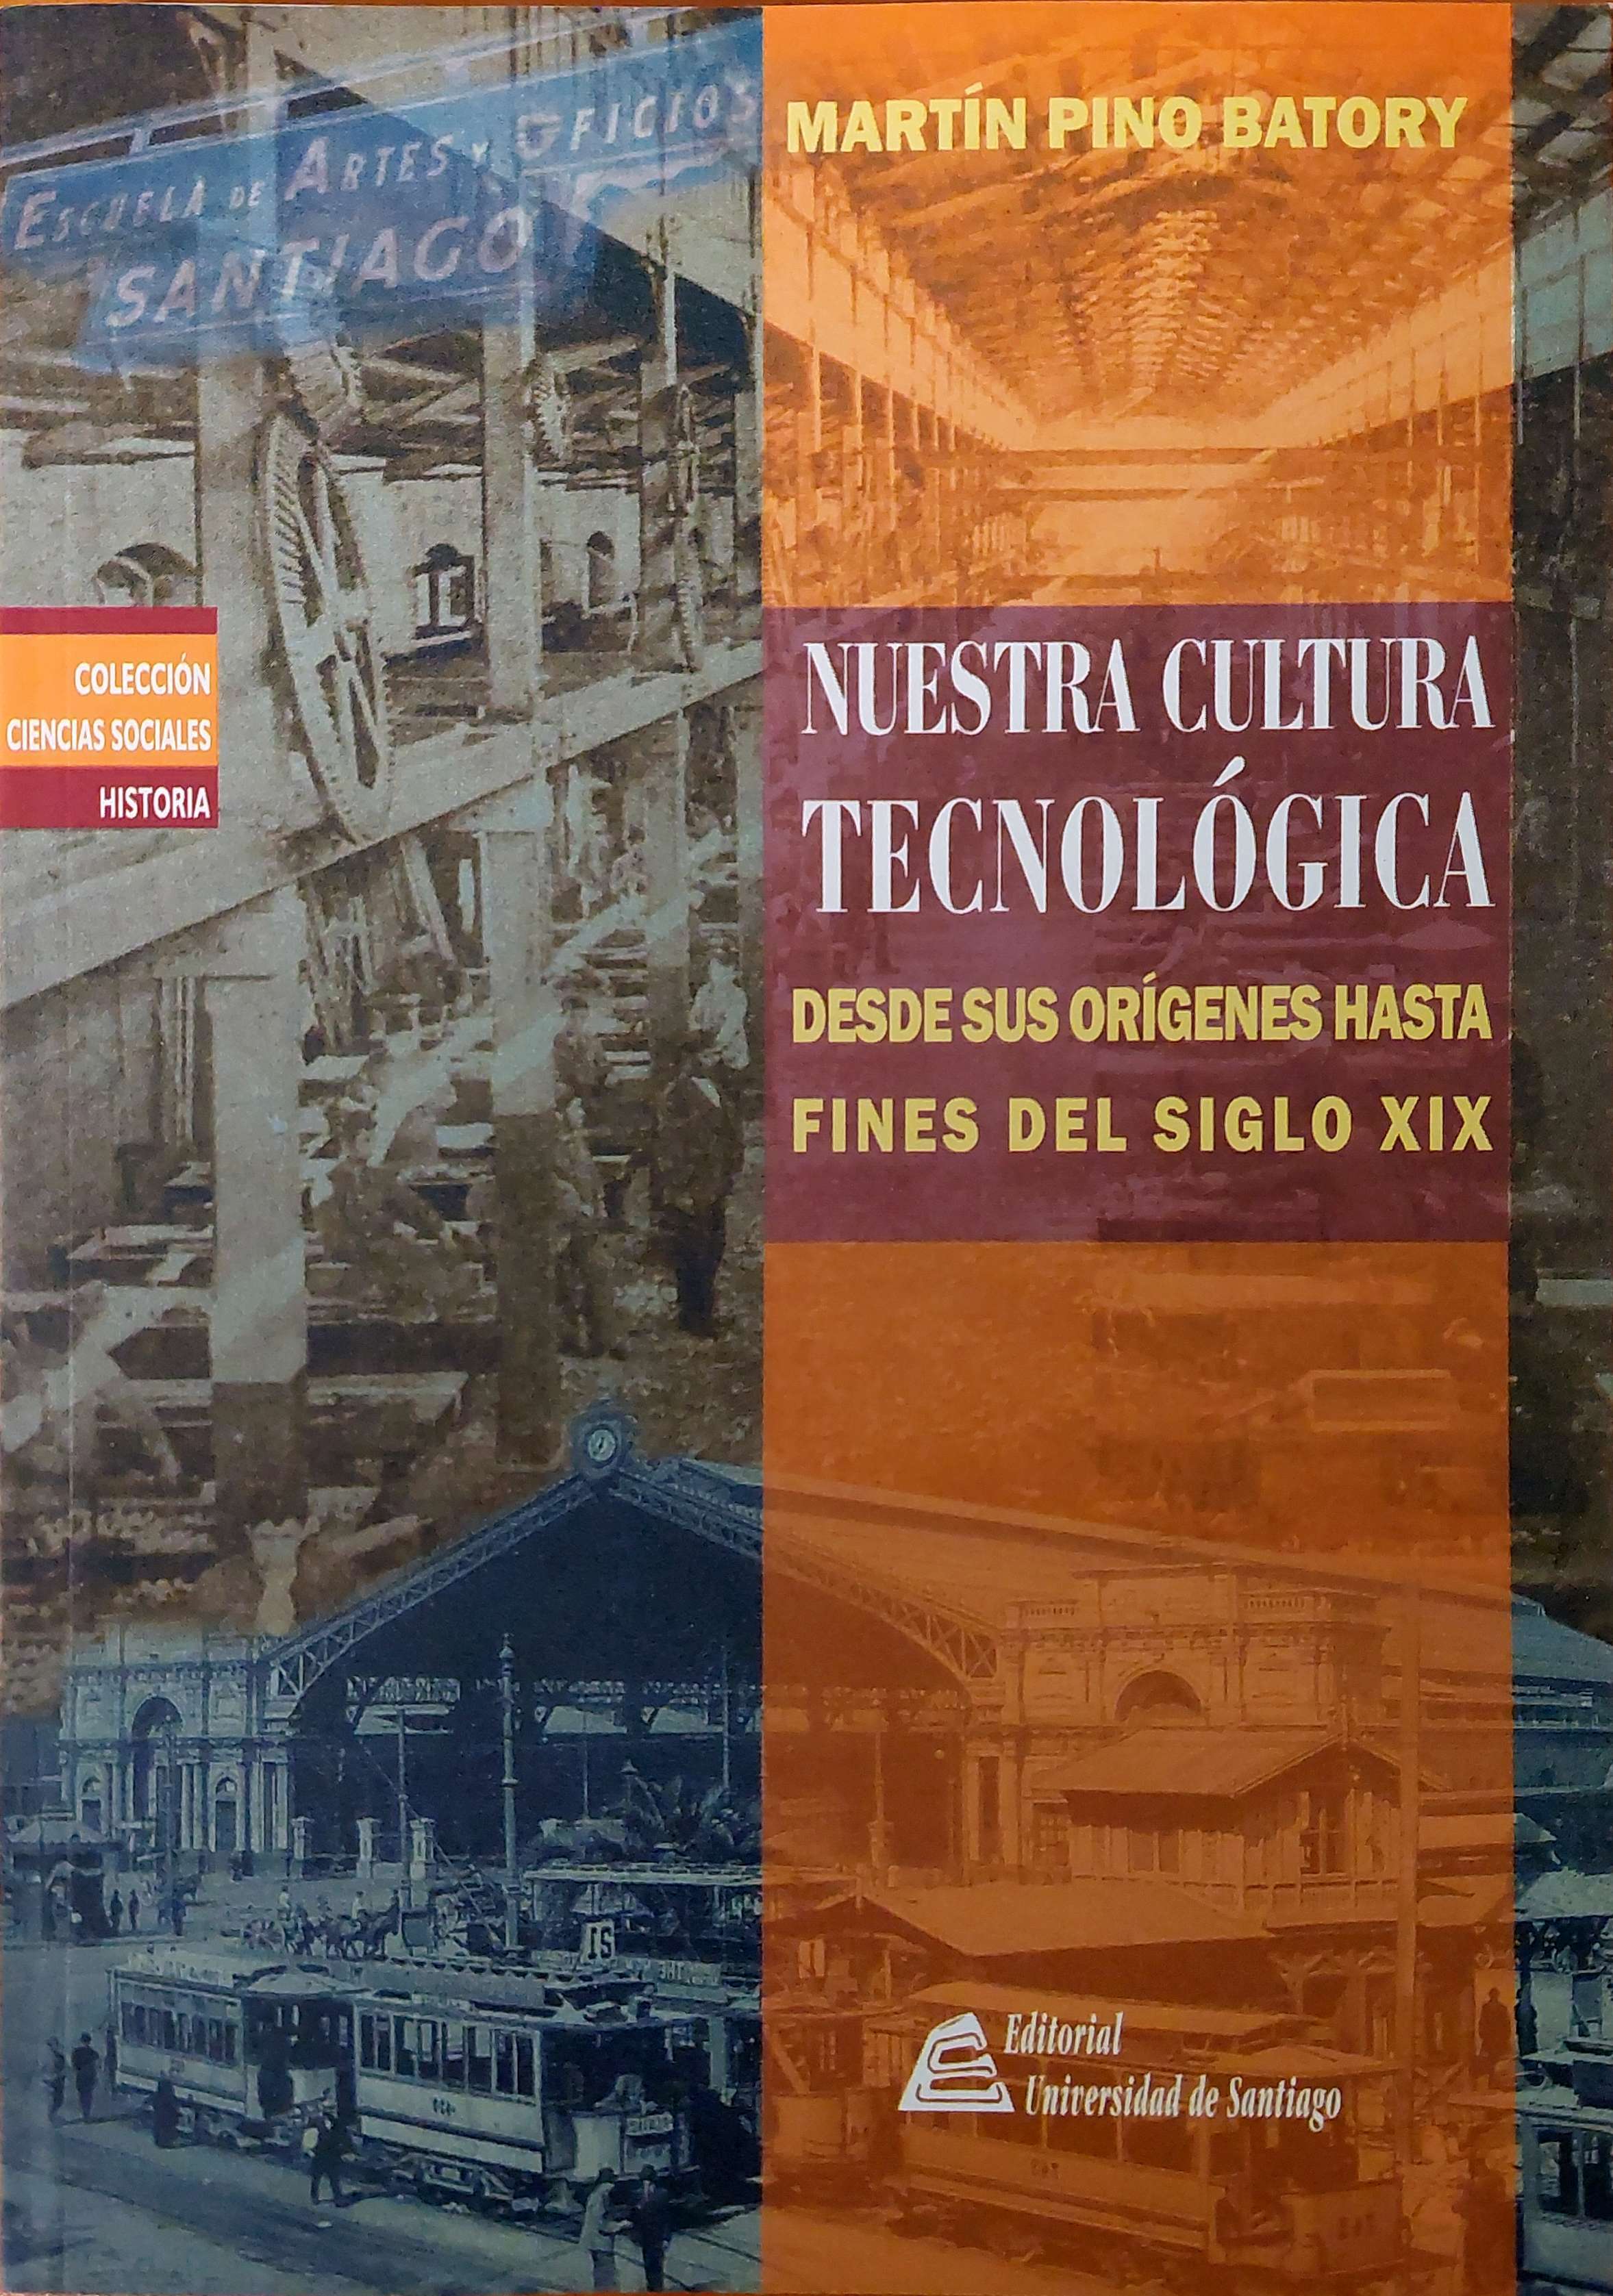 Nuestra cultura tecnológica: desde sus orígenes hasta fines del siglo XIX